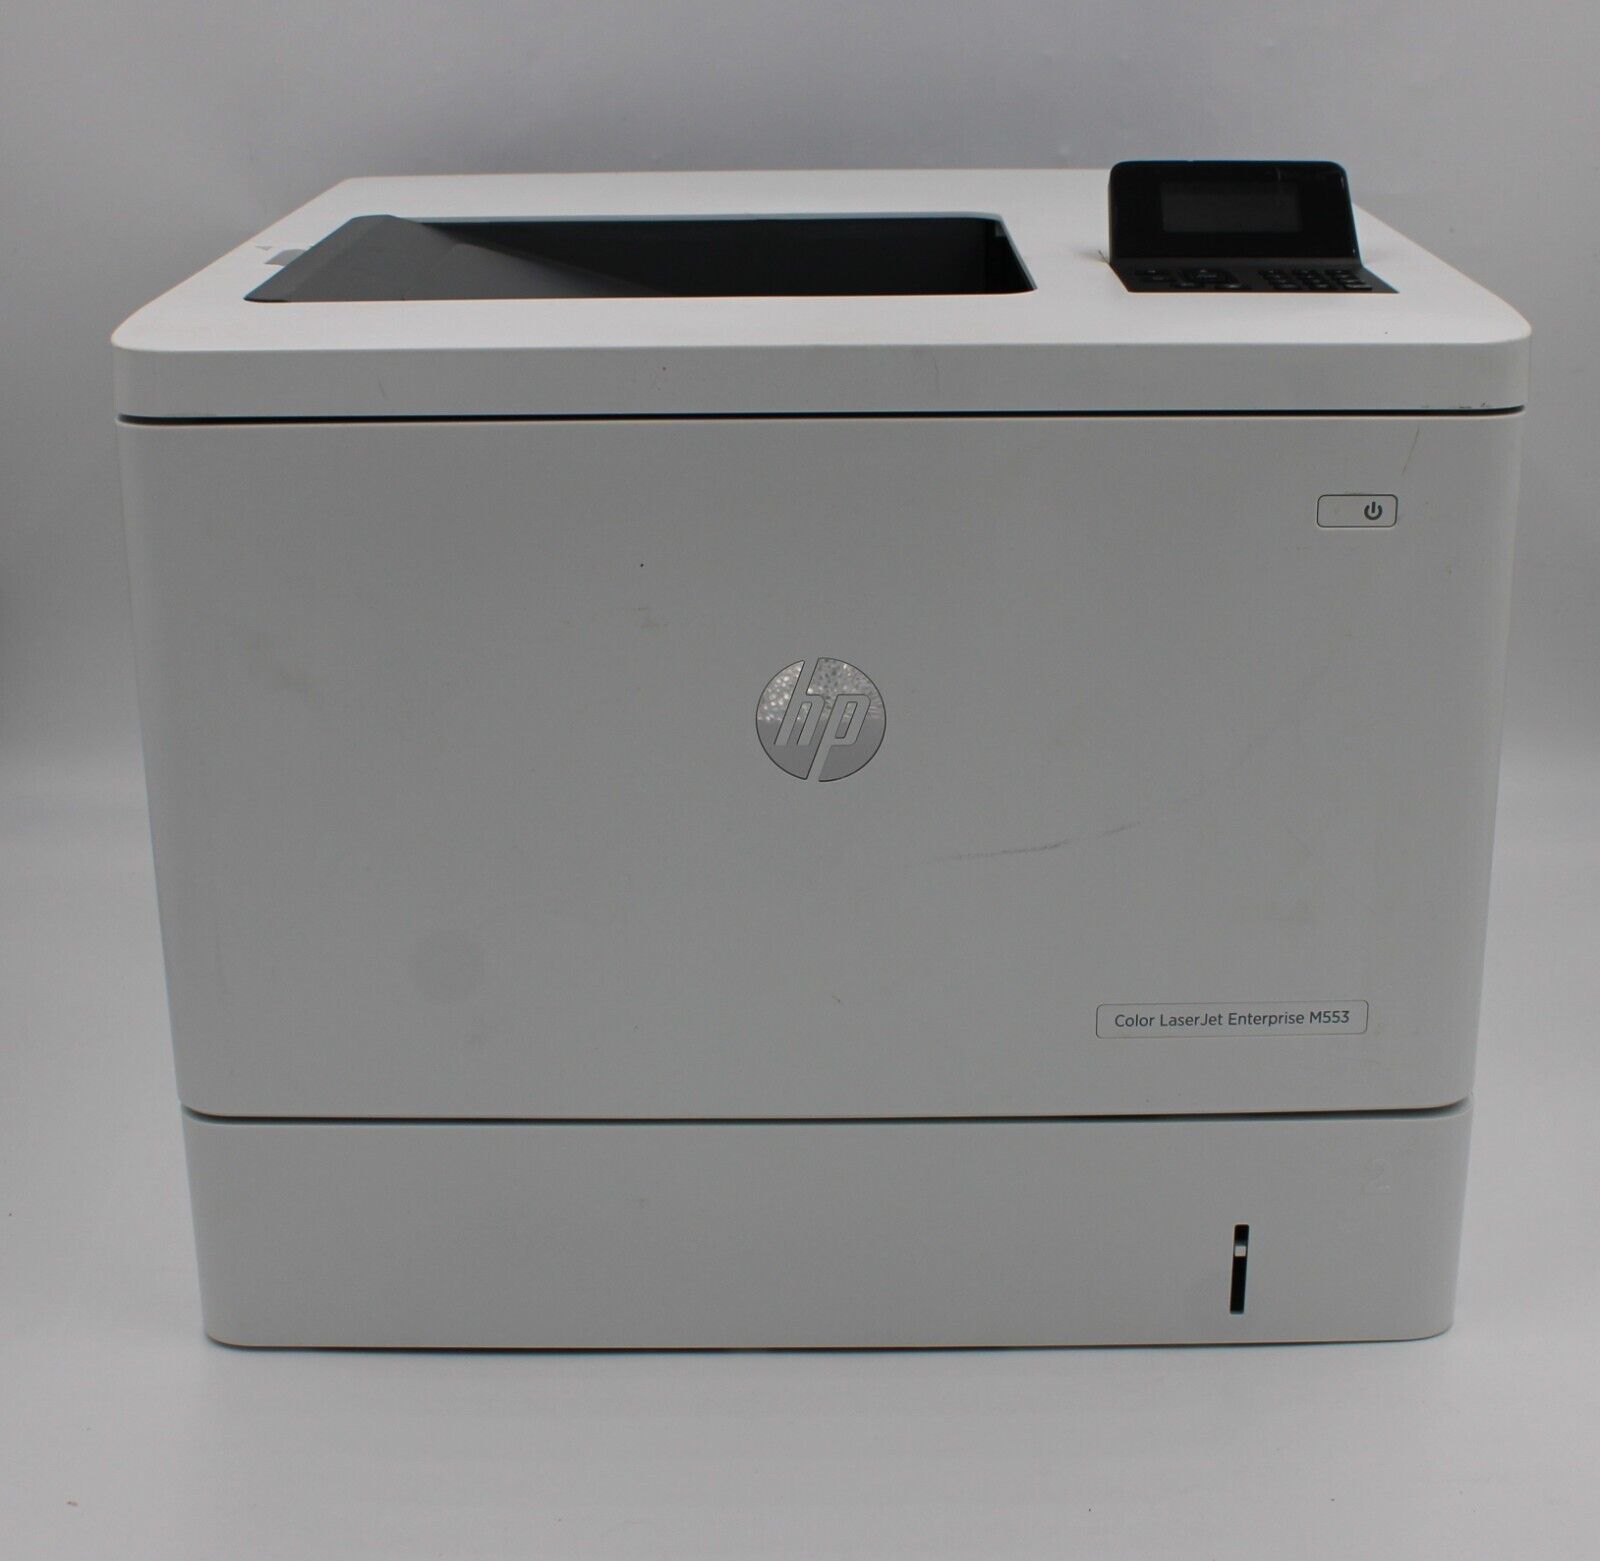 HP Color LaserJet Enterprise M553 B5L25A Network Laser Printer With Toner TESTED